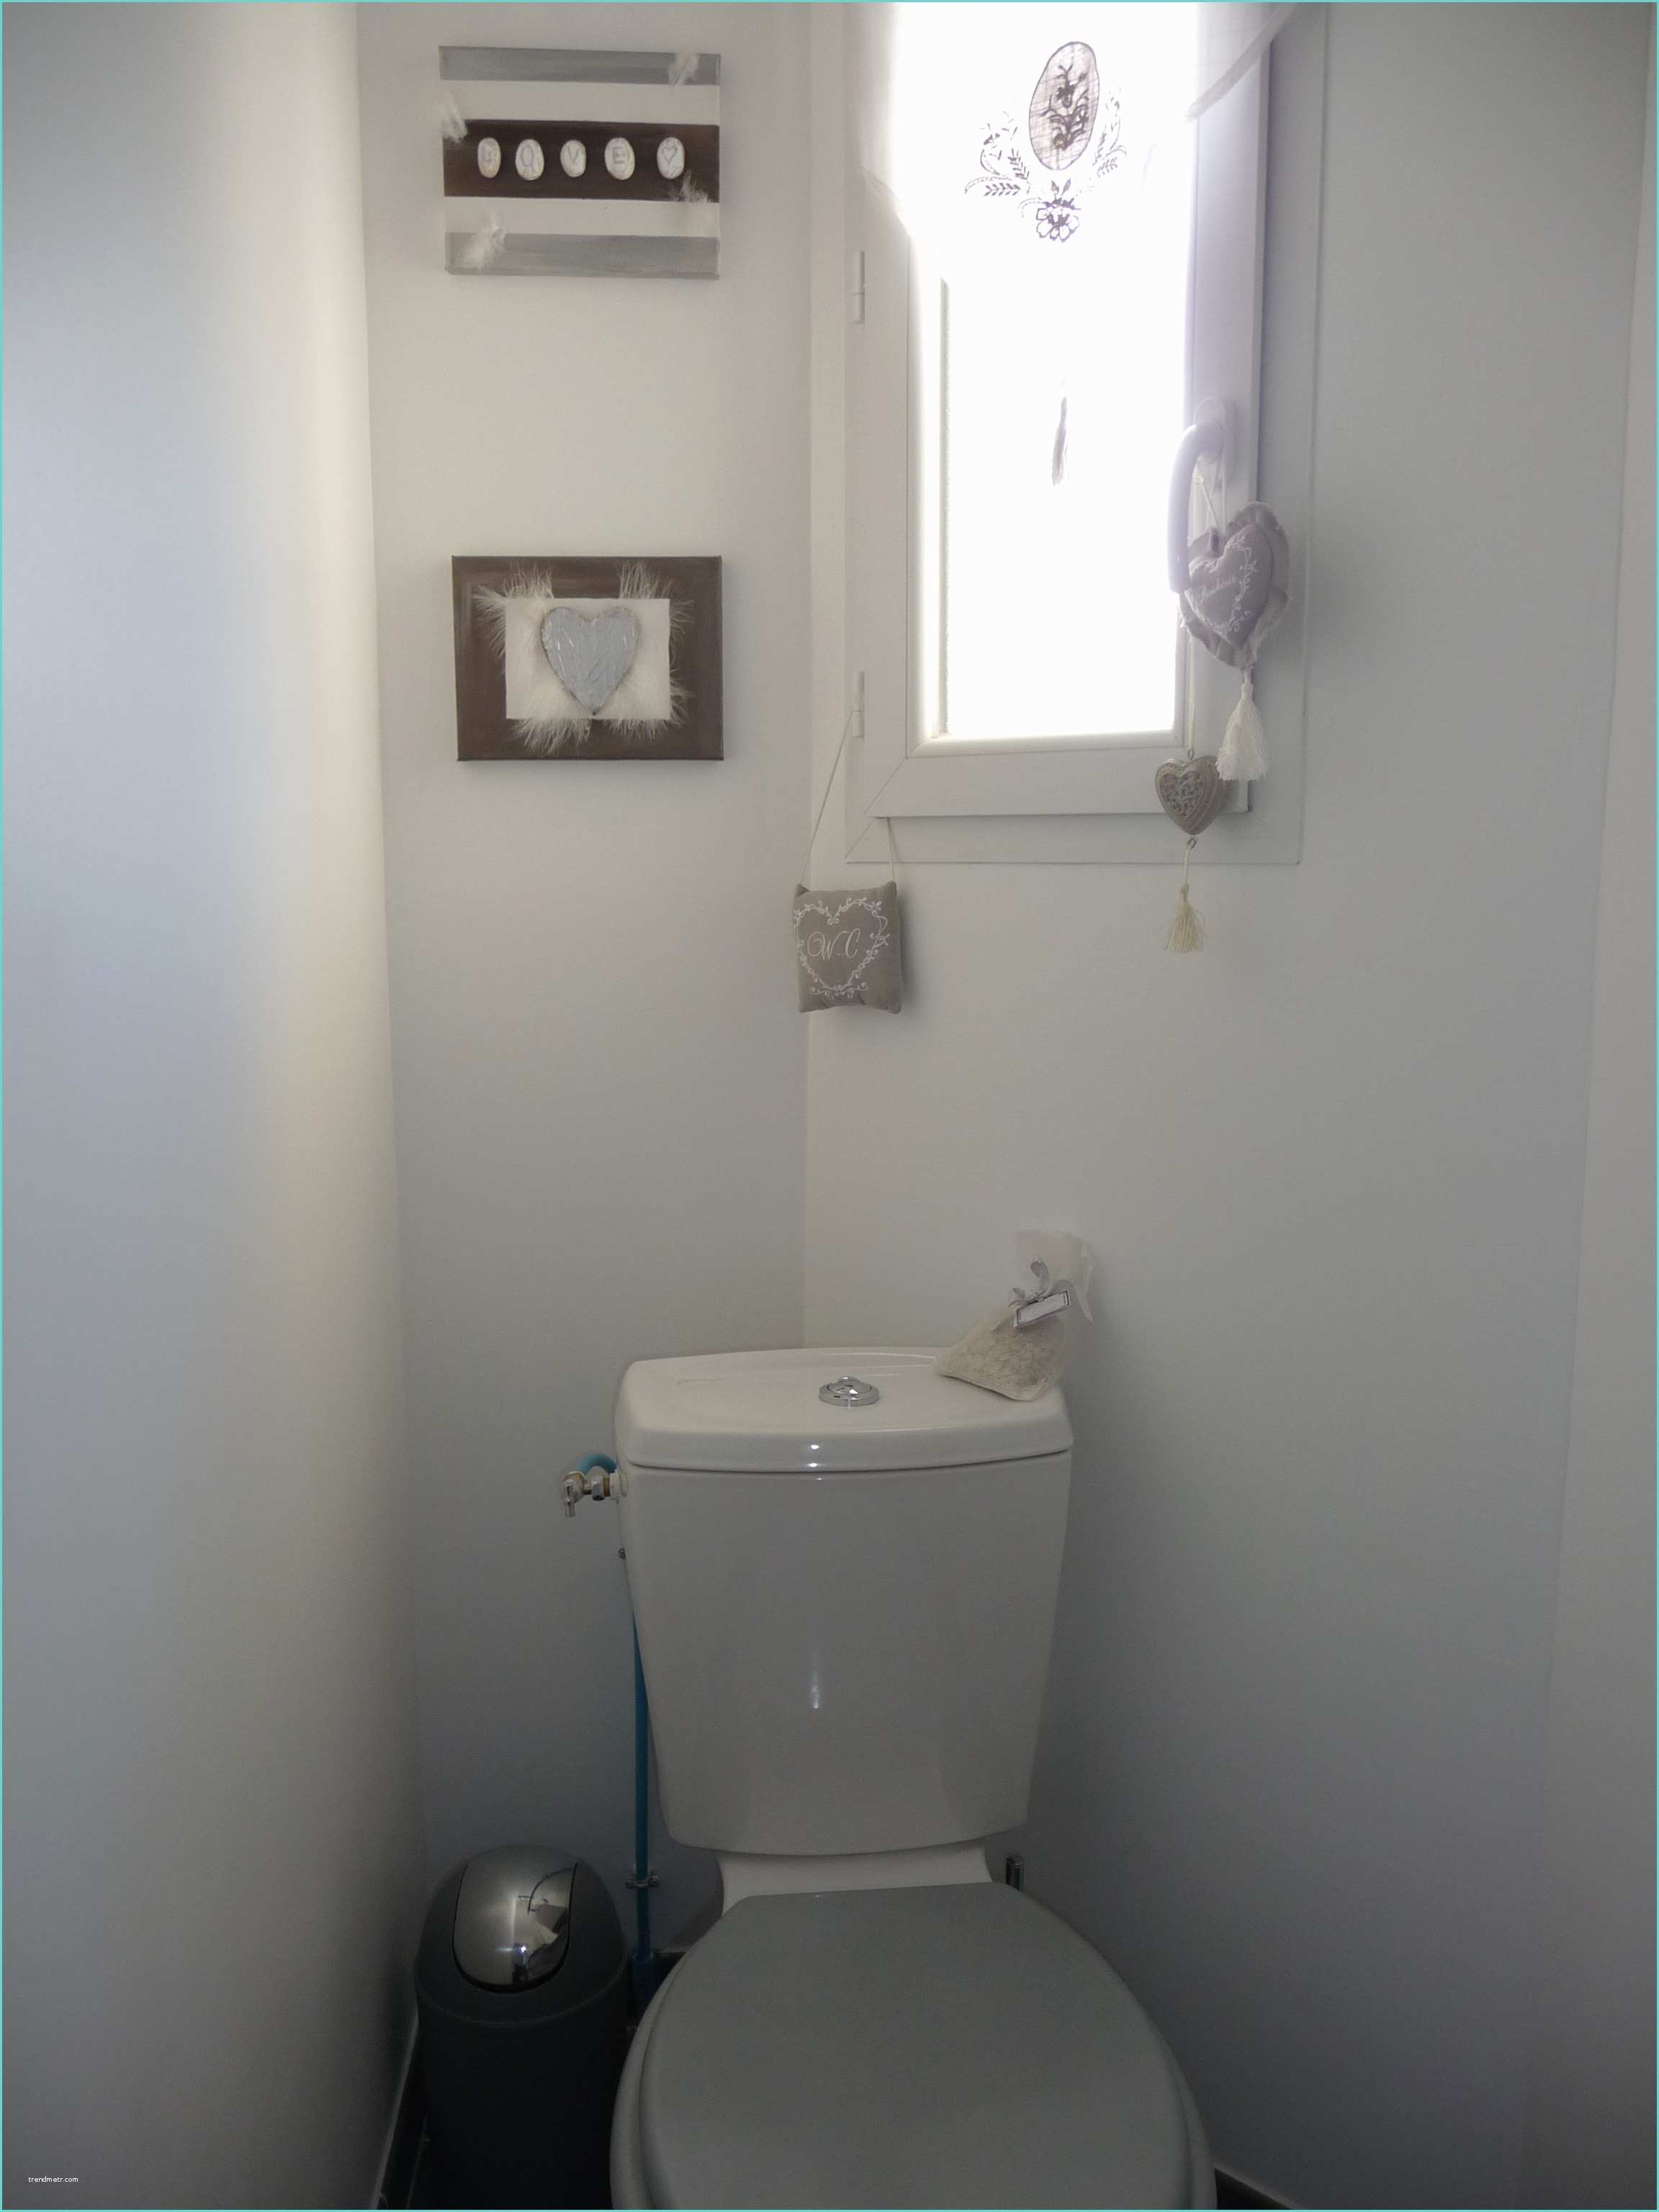 Toilettes Gris Et Blanc Mes W C Photo 1 8